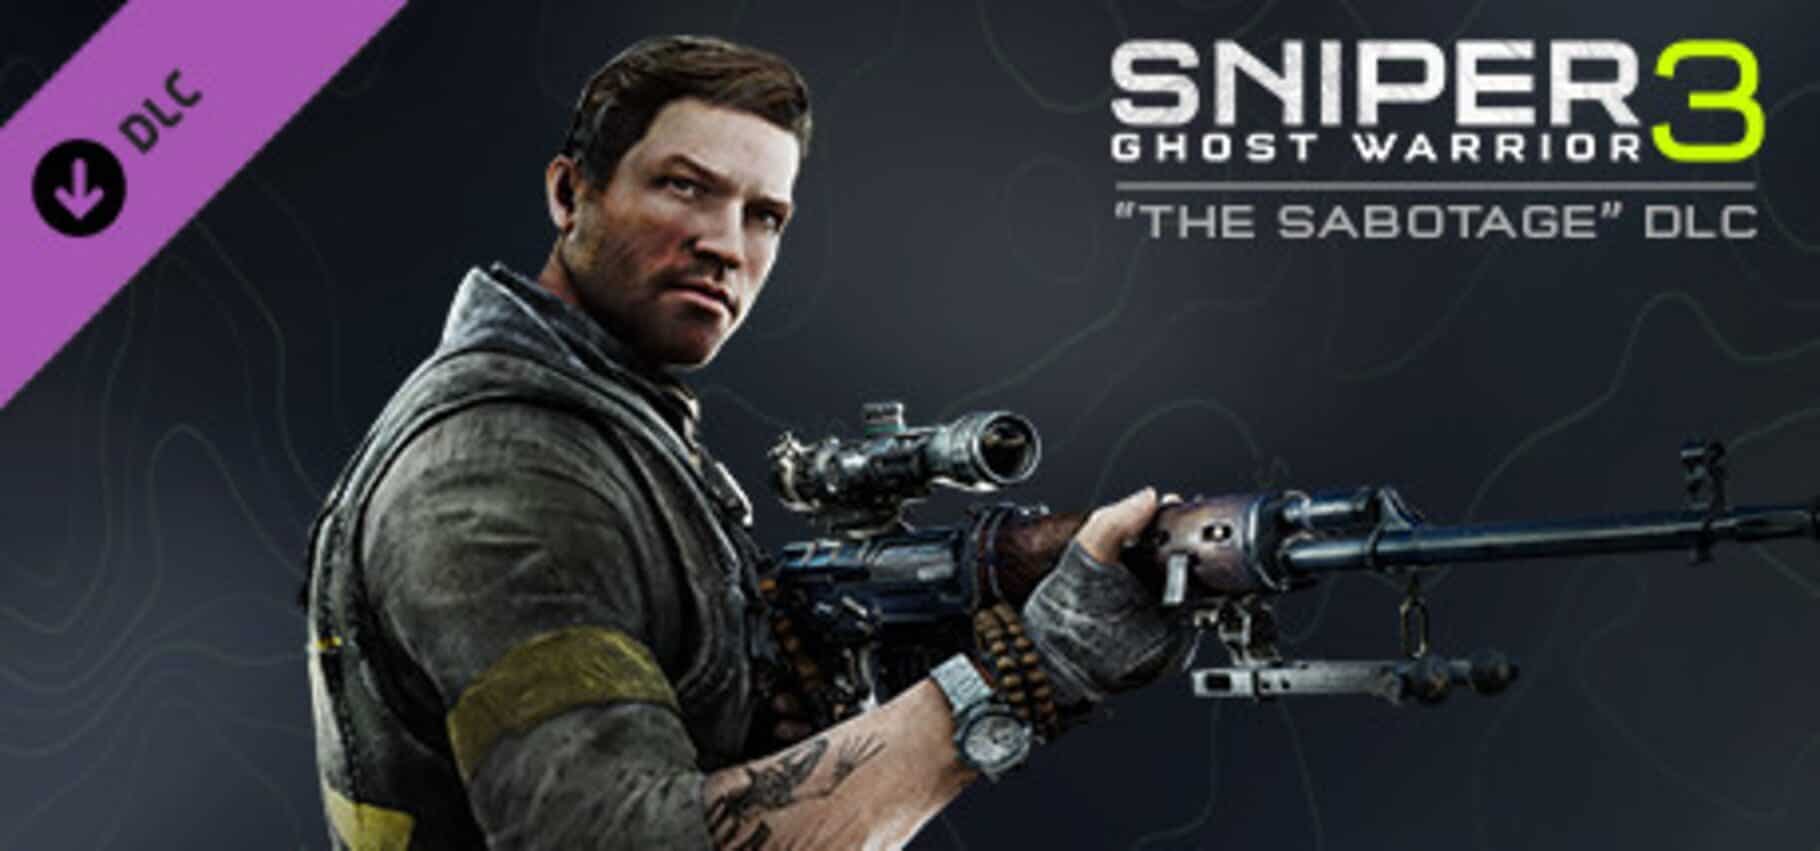 Sniper Ghost Warrior 3: The Sabotage